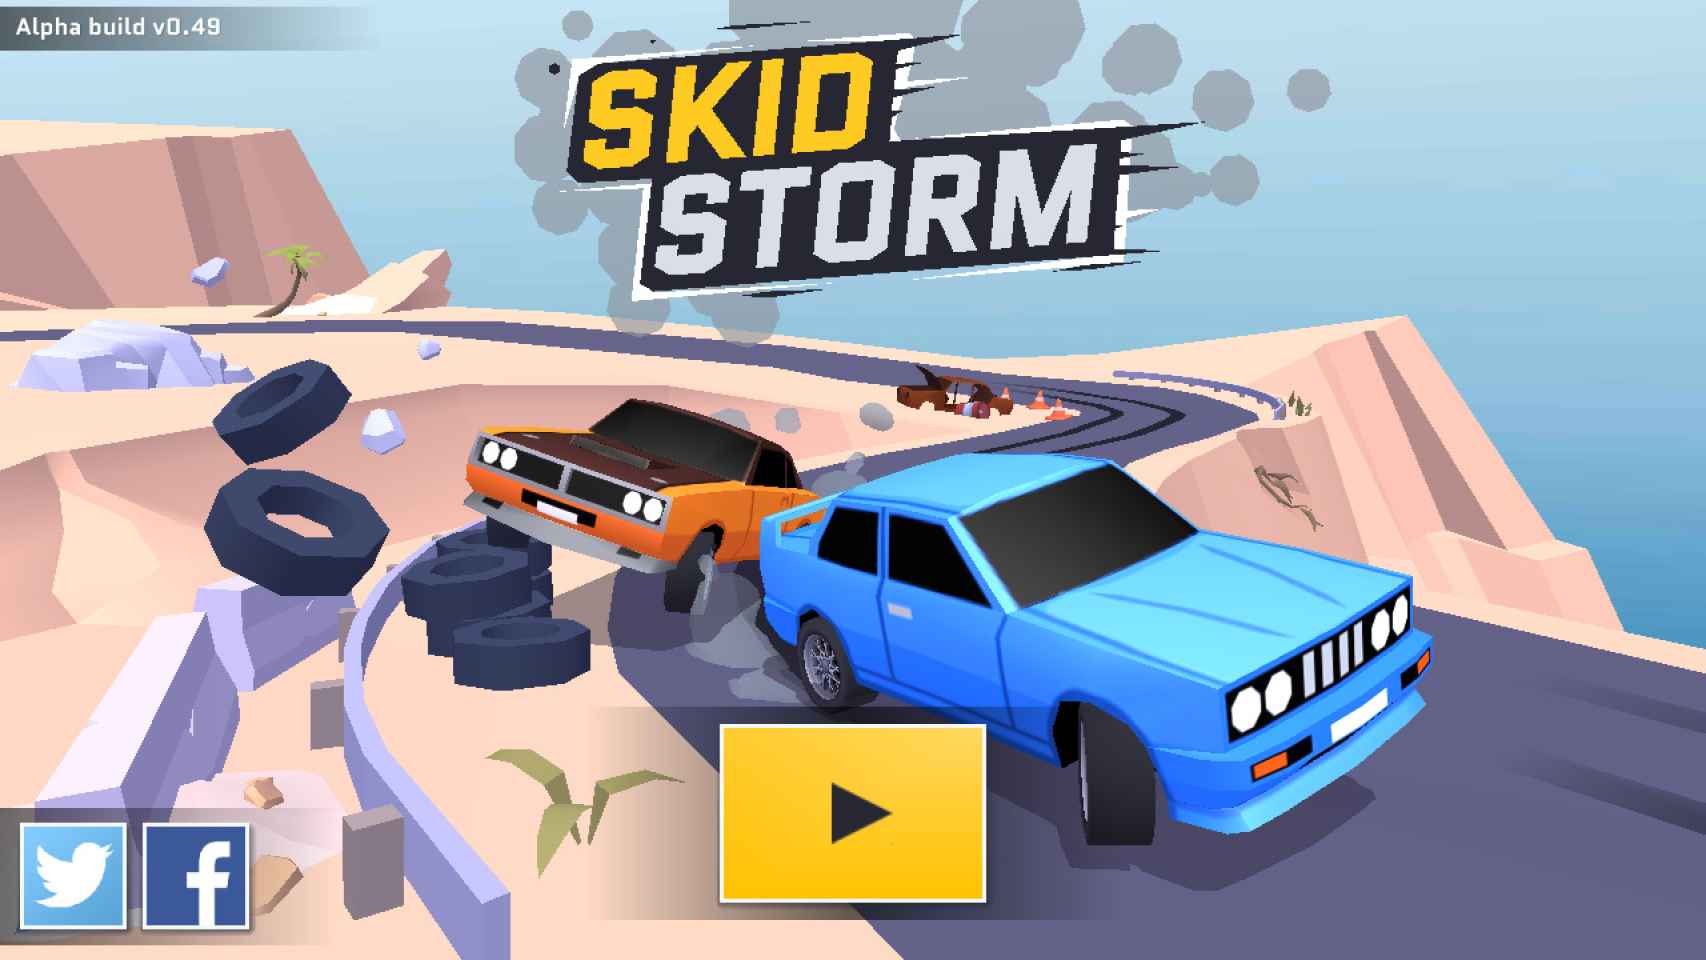 Carreras de coches y derrapes, la combinación explosiva de SkidStorm